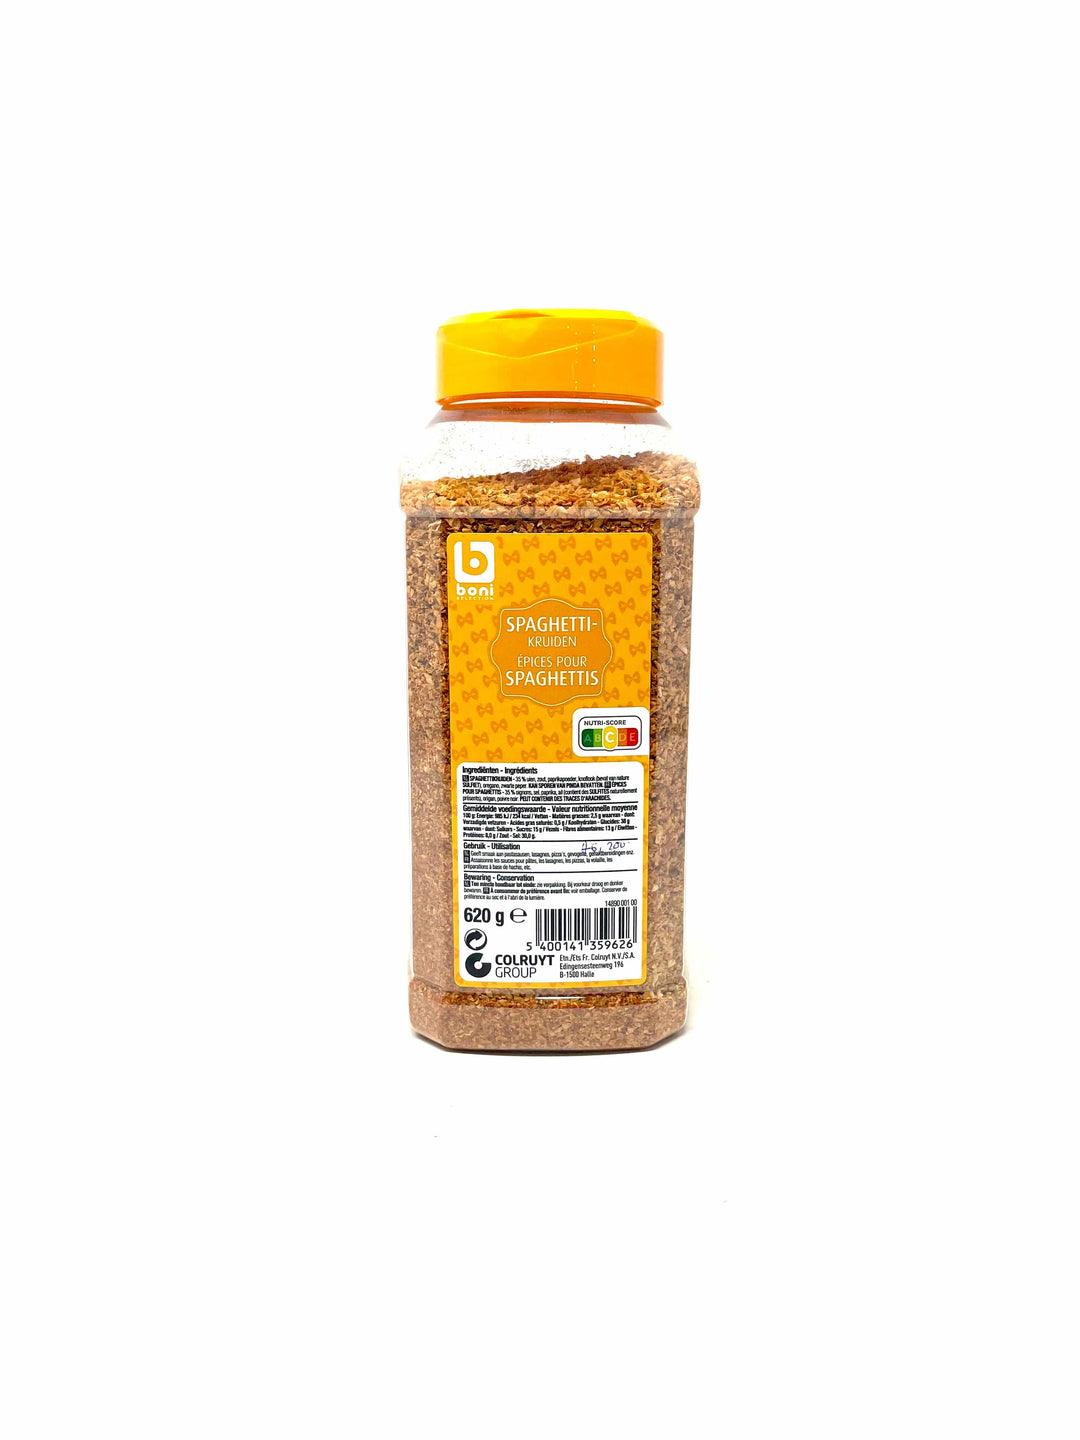 Boni  Spaghetti Spice 620g